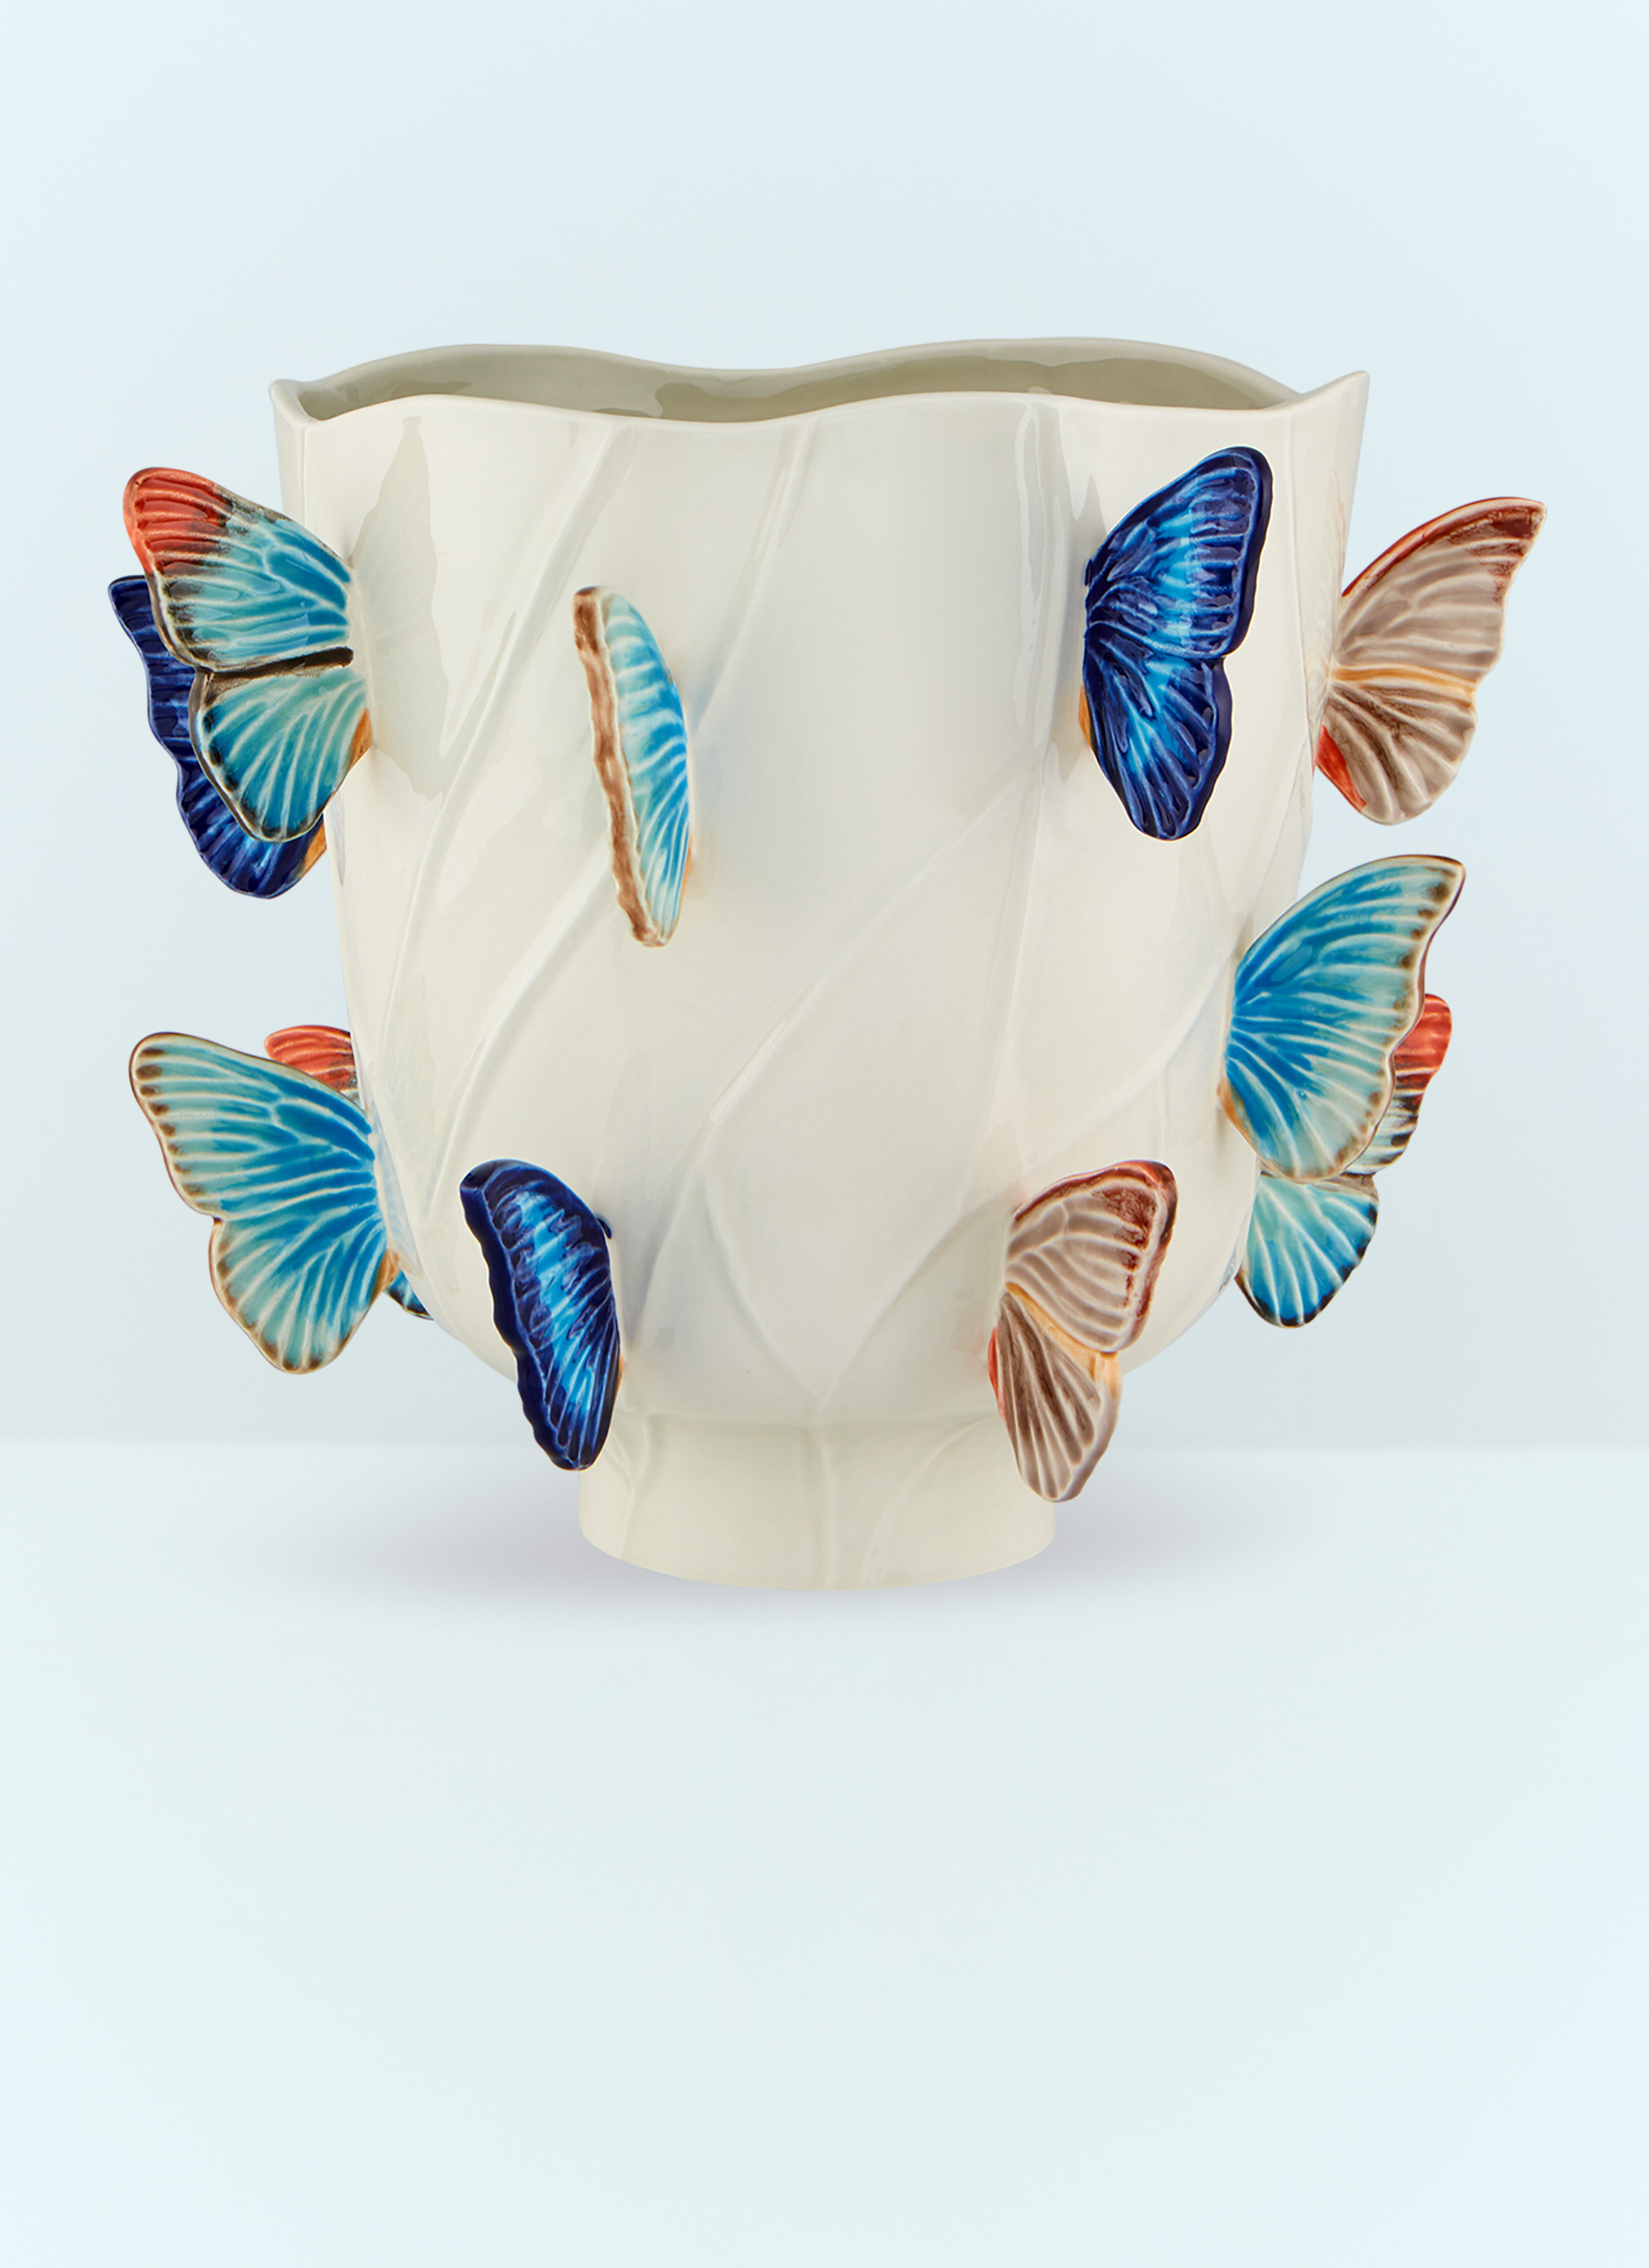 Les Ottomans Cloudy Butterflies Large Vase Multicolour wps0691164